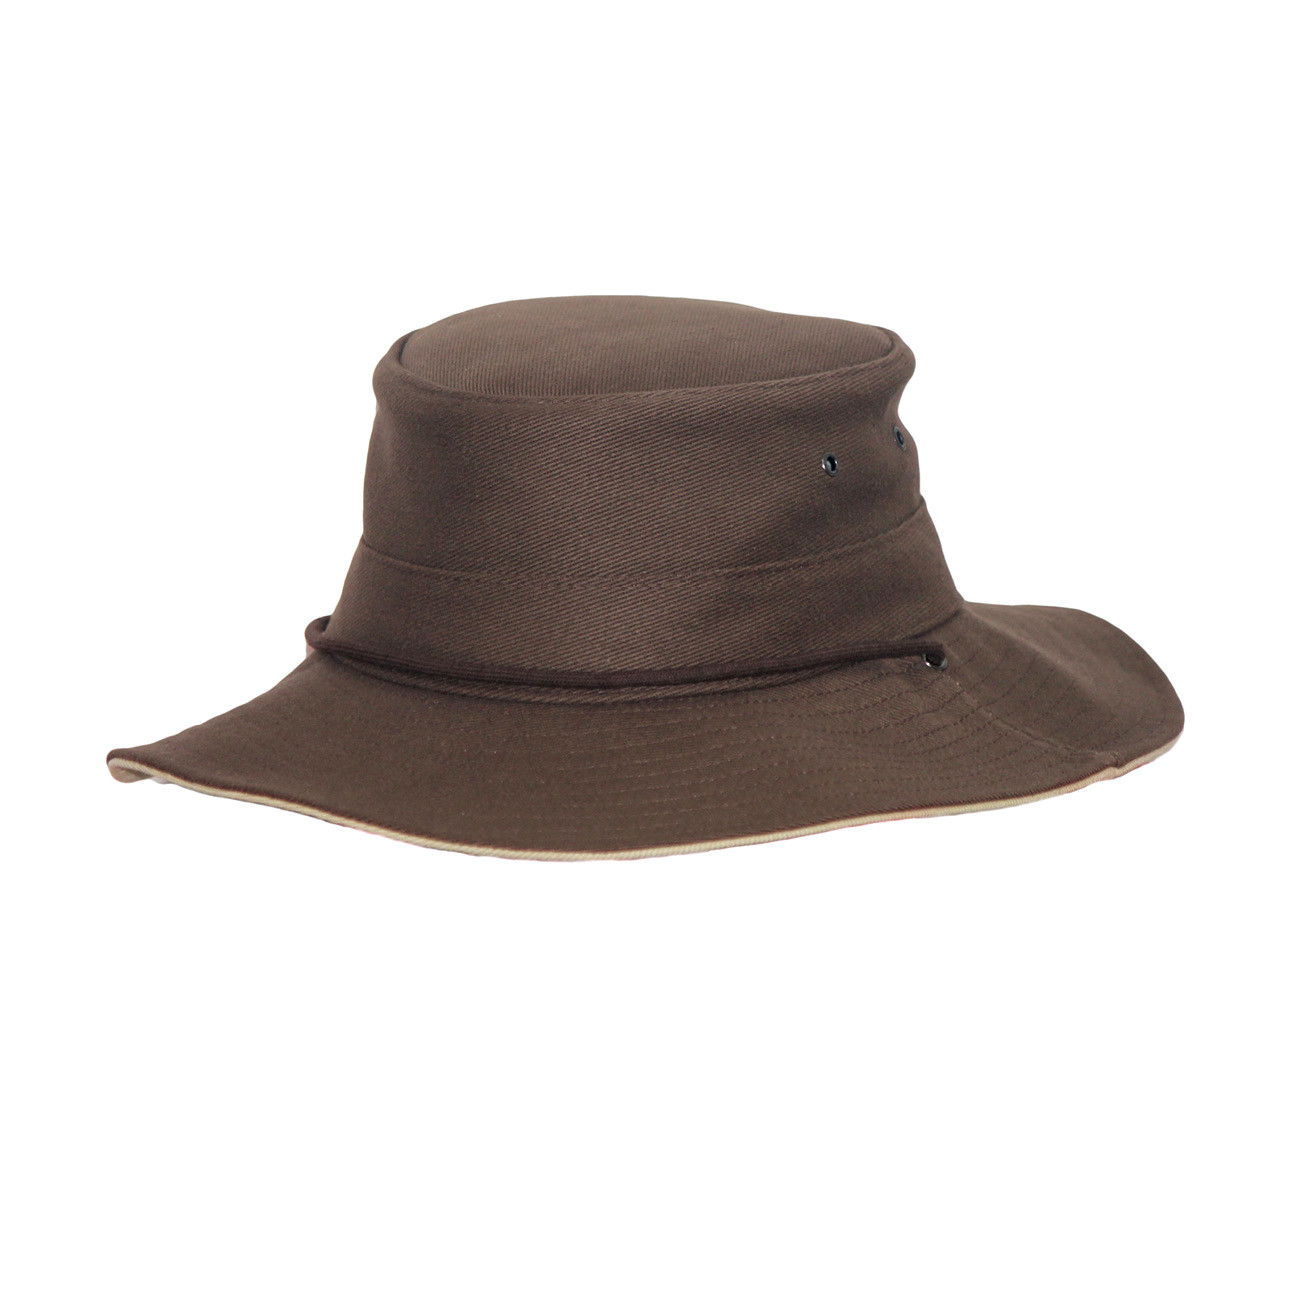 Rigon - UV boonie hat for men - Chocolate brown / beige